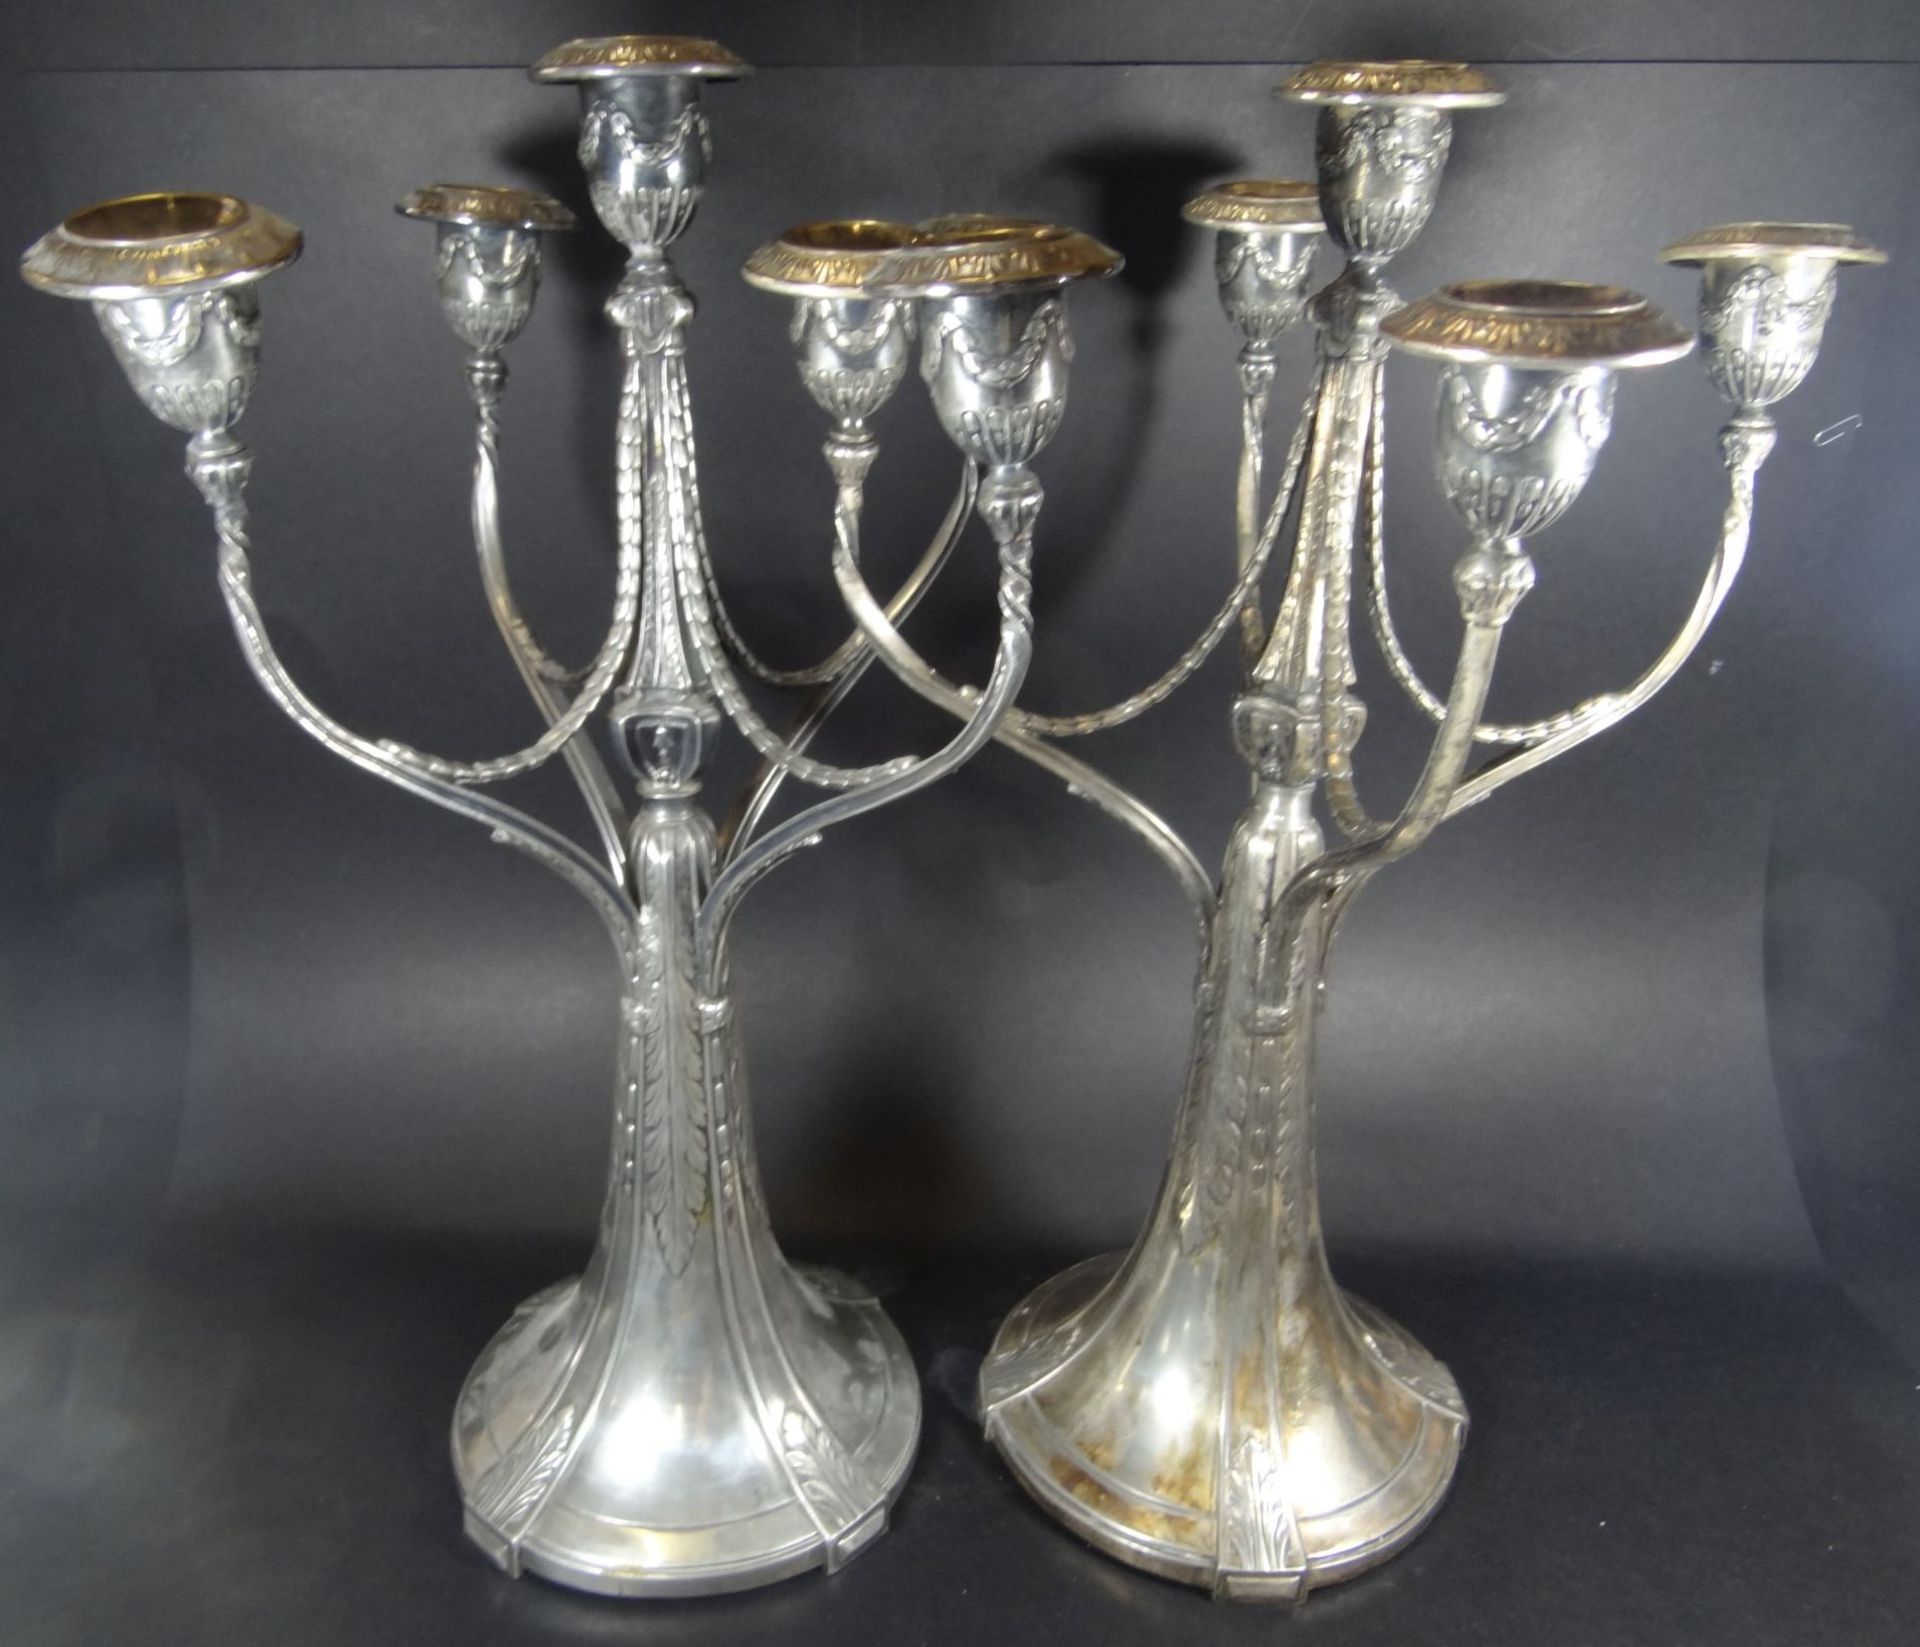 Paar hohe Jugendstil-Leuchter, Silberzinn, je 5-flammig, 1x Mitteltülle geklebt, gemarkt CLD (wohl